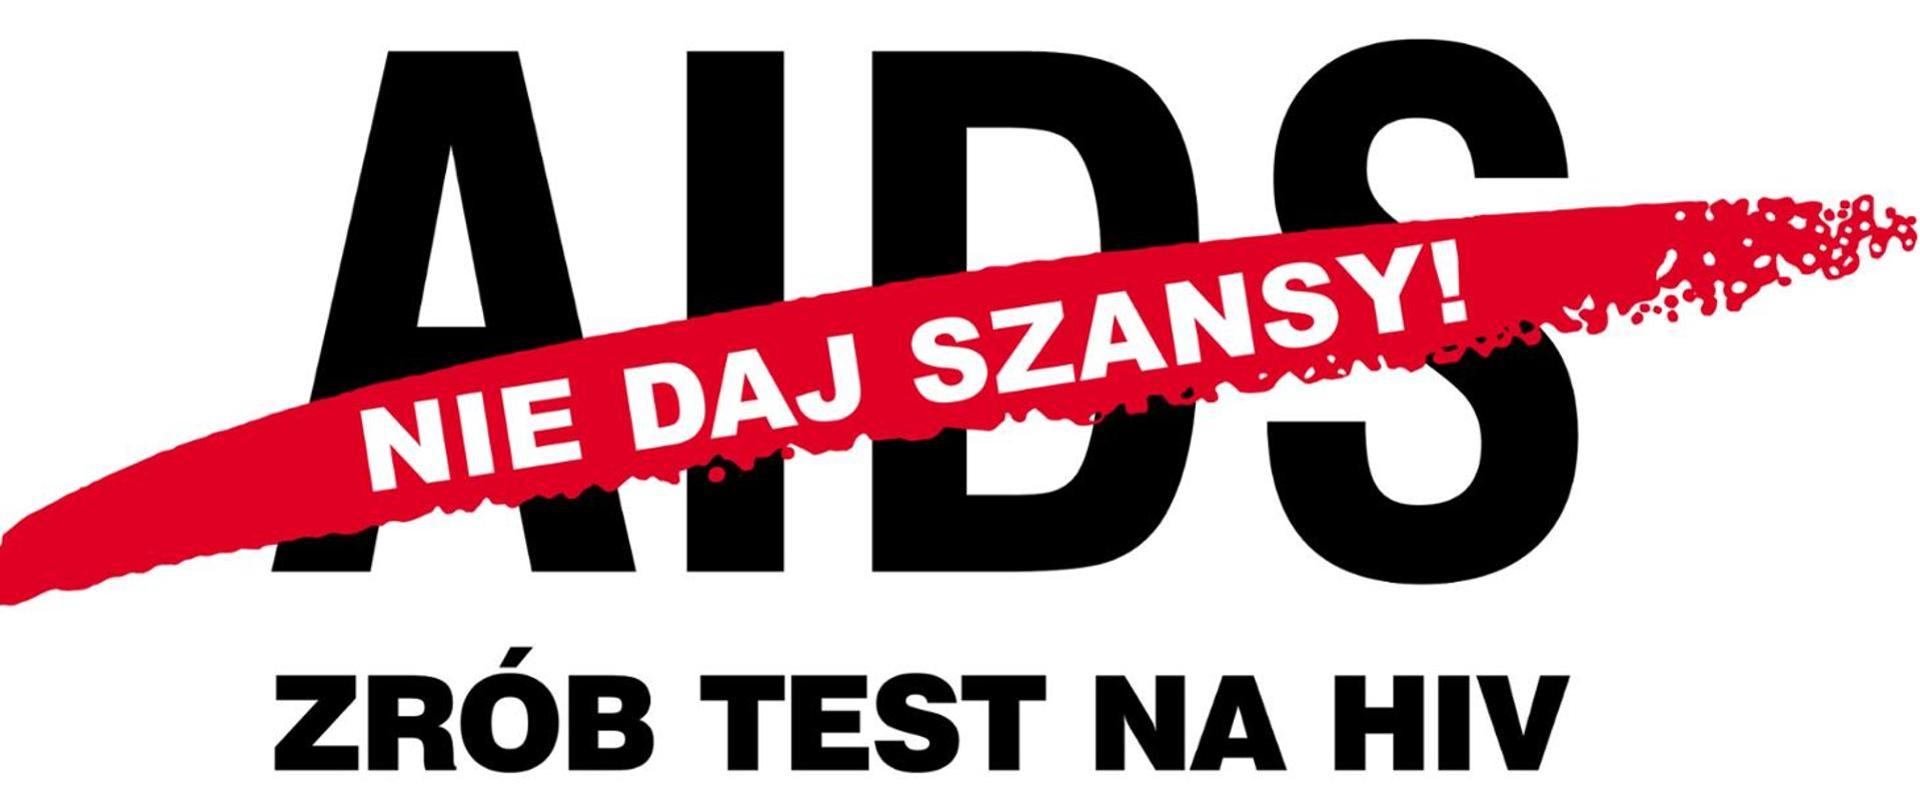 Nie daj szansy AIDS - zrób test na HIV